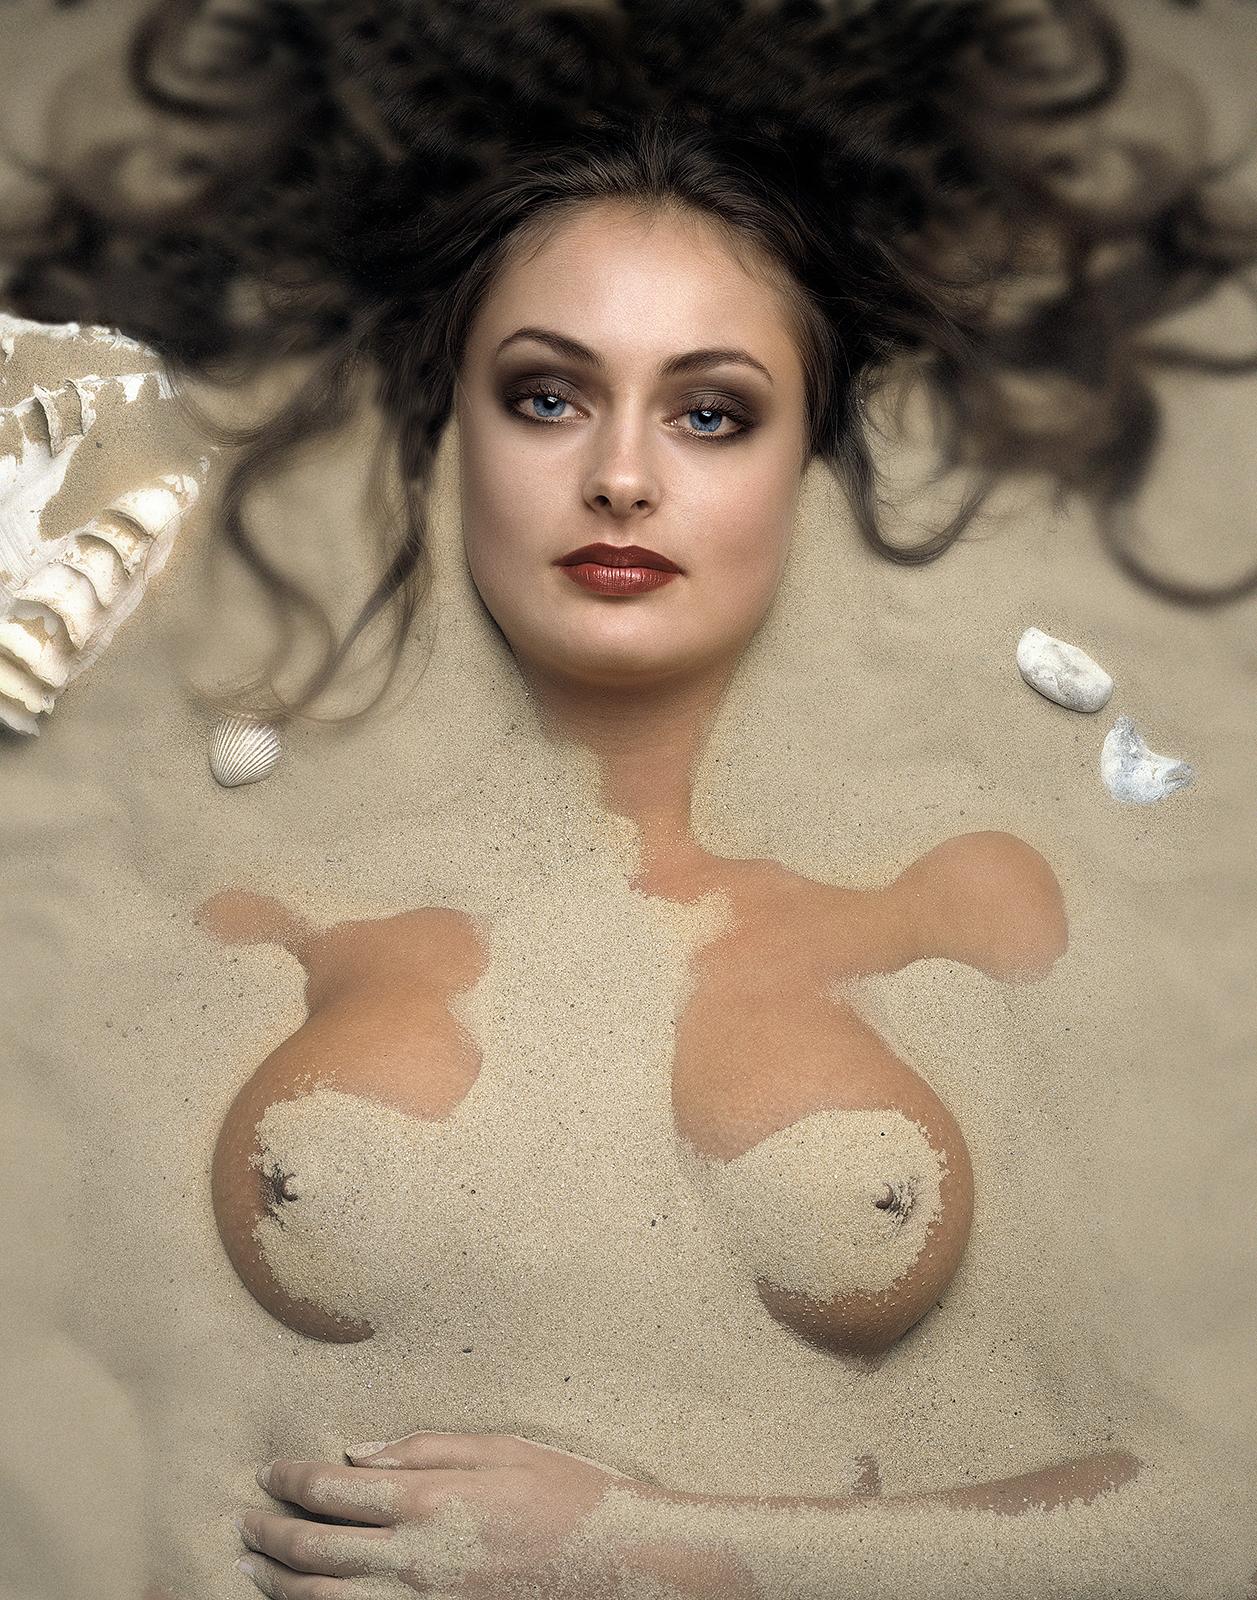 Ian Sanderson Color Photograph - Figurative photo, Limited edition nude print, Contemporary, Sensual - Miranda